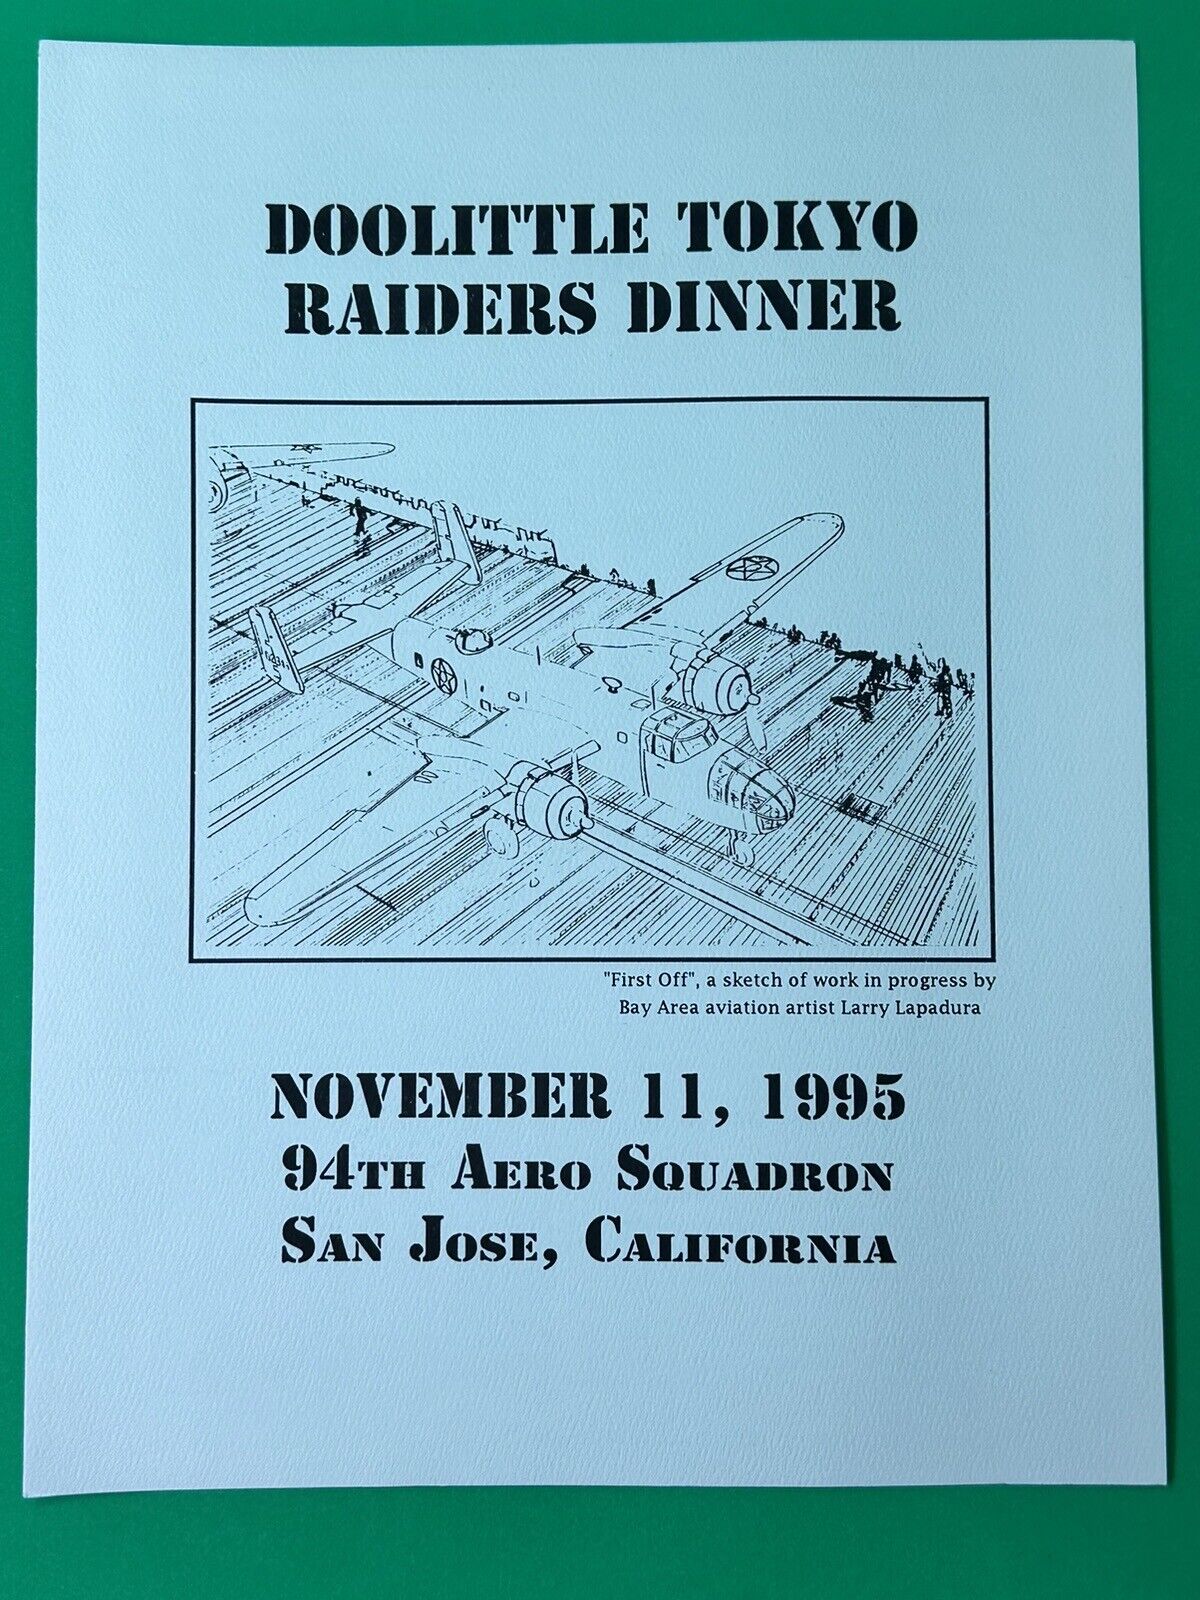 Signed Doolittle Tokyo Raiders Dinner Program - by Holstrom+Potter+Kappeler